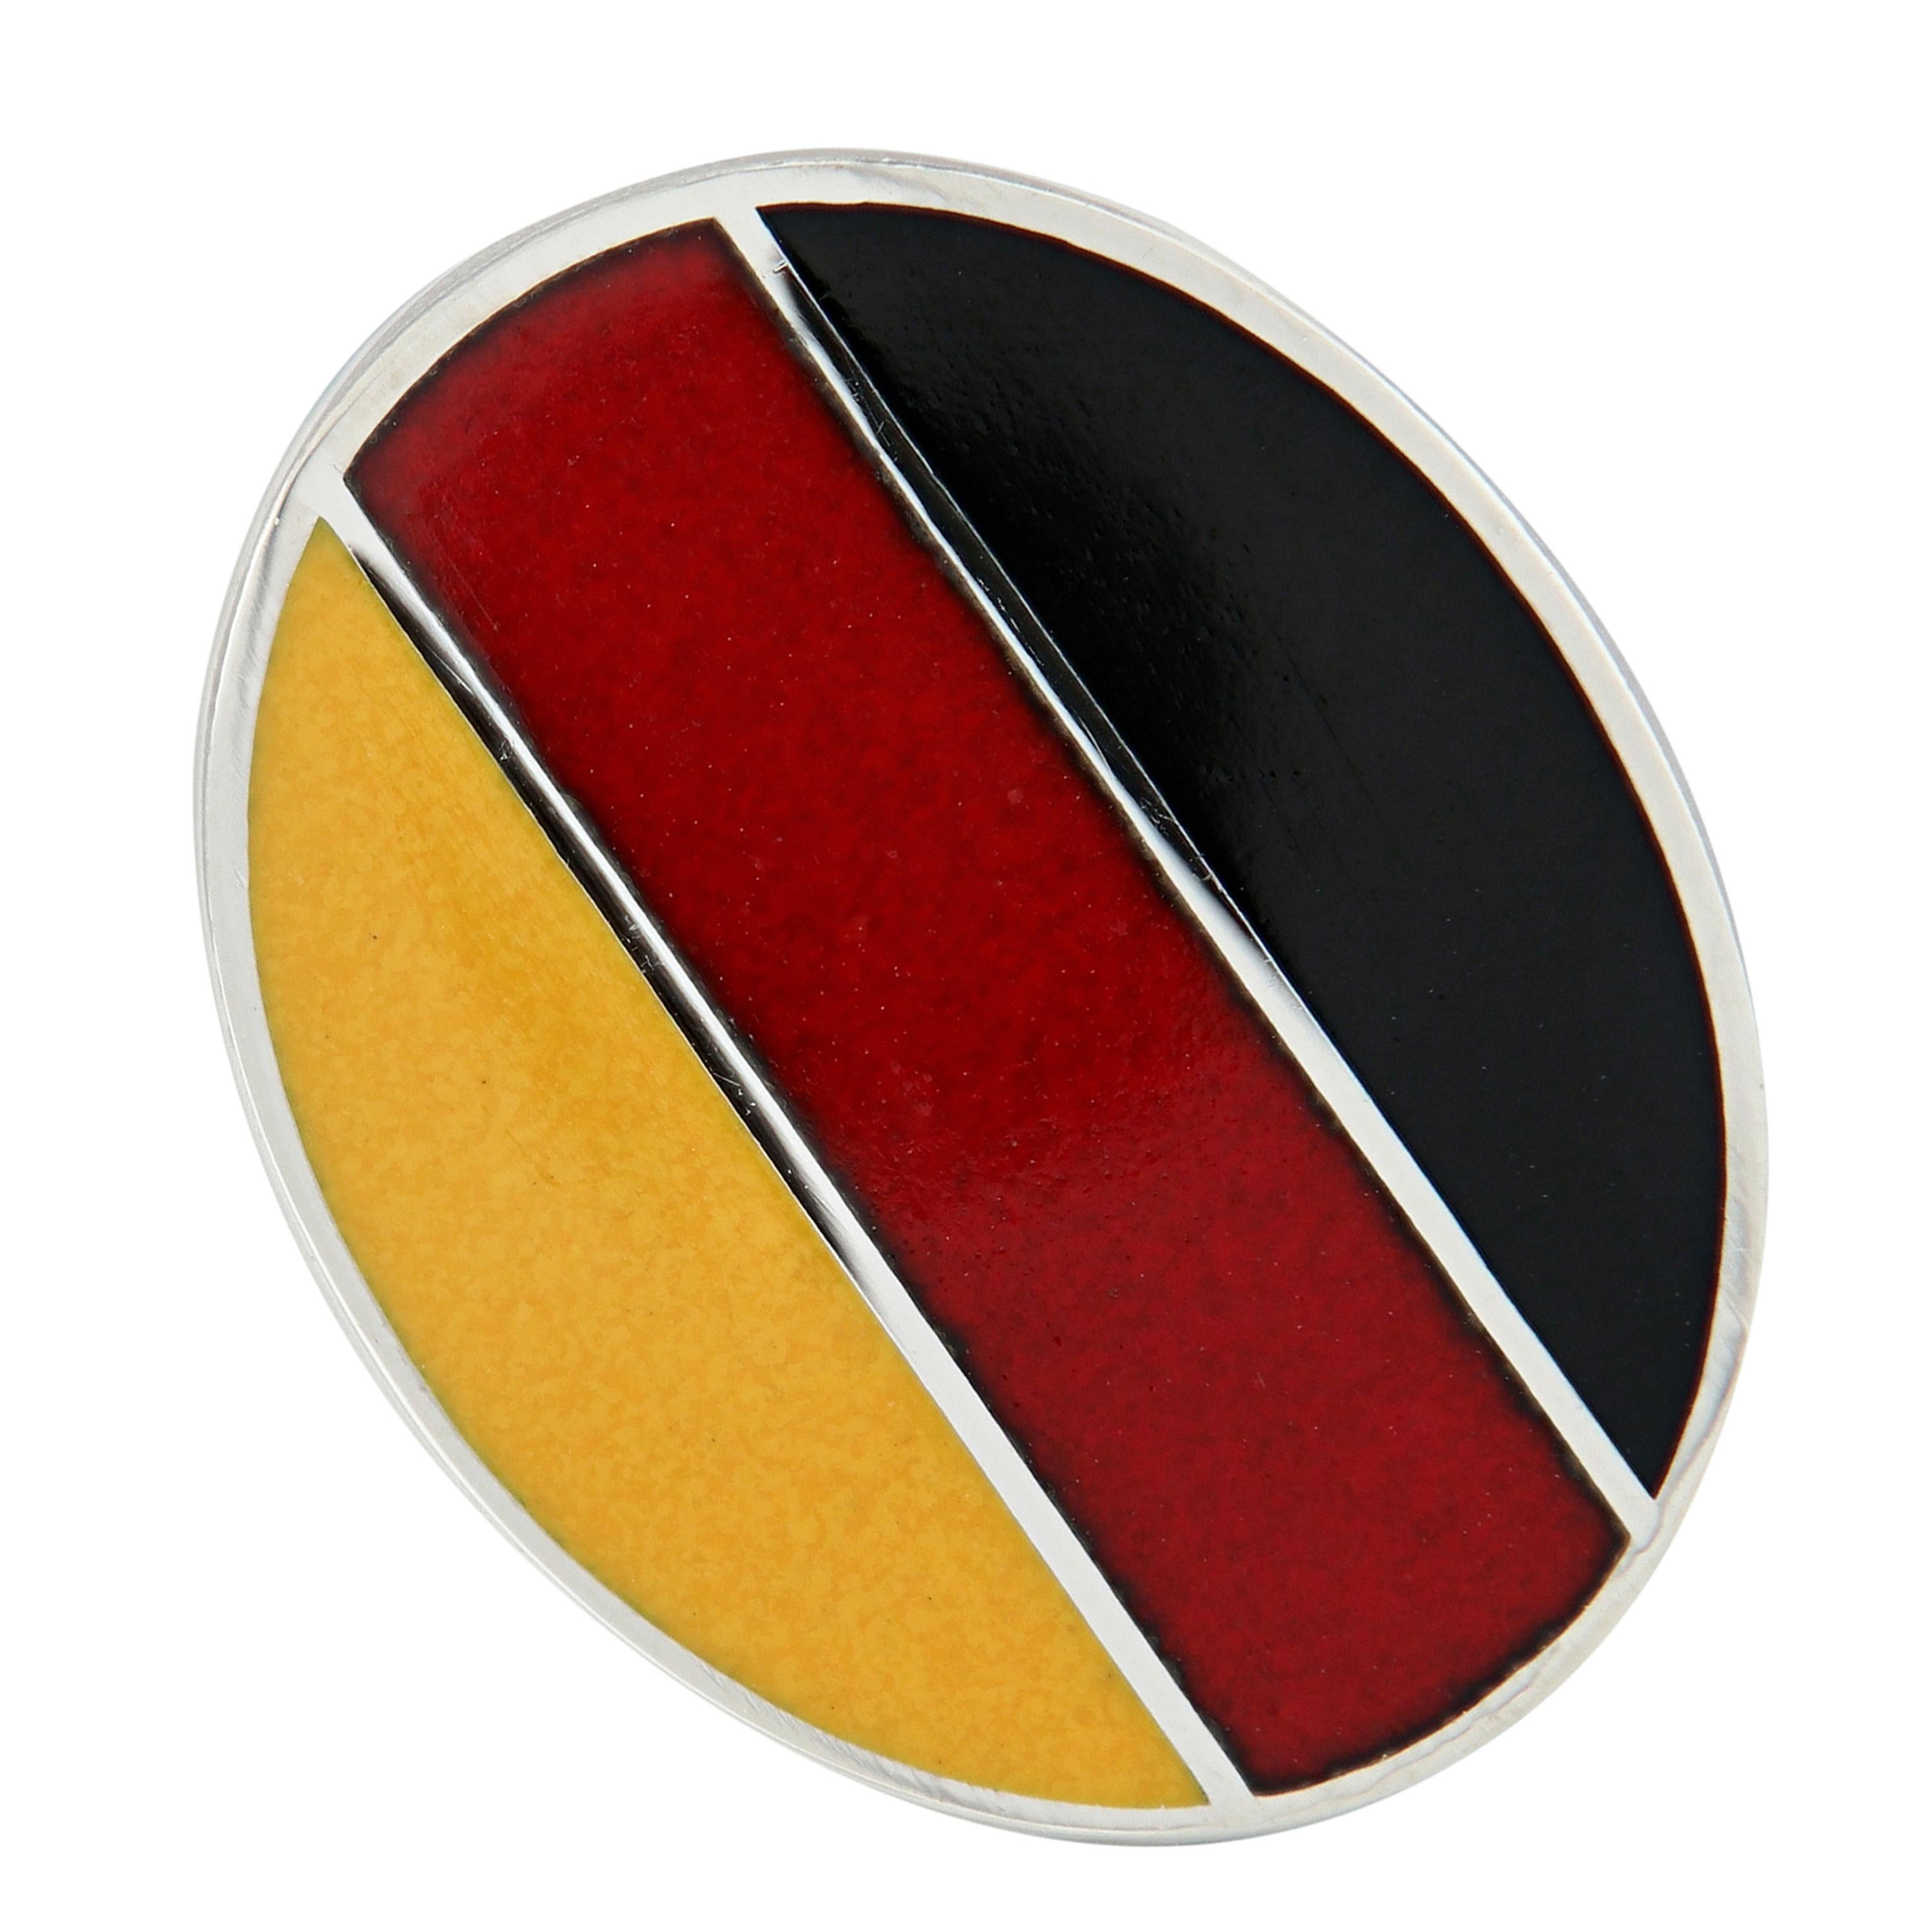 Schöne Manschettenknöpfe mit guillochiertem Emaille-Design der deutschen Flagge. Handgefertigt in England für 
Campanelli & Pear. Wiegt 12,6 Gramm. Das Oval misst 15 mm x 19 mm.